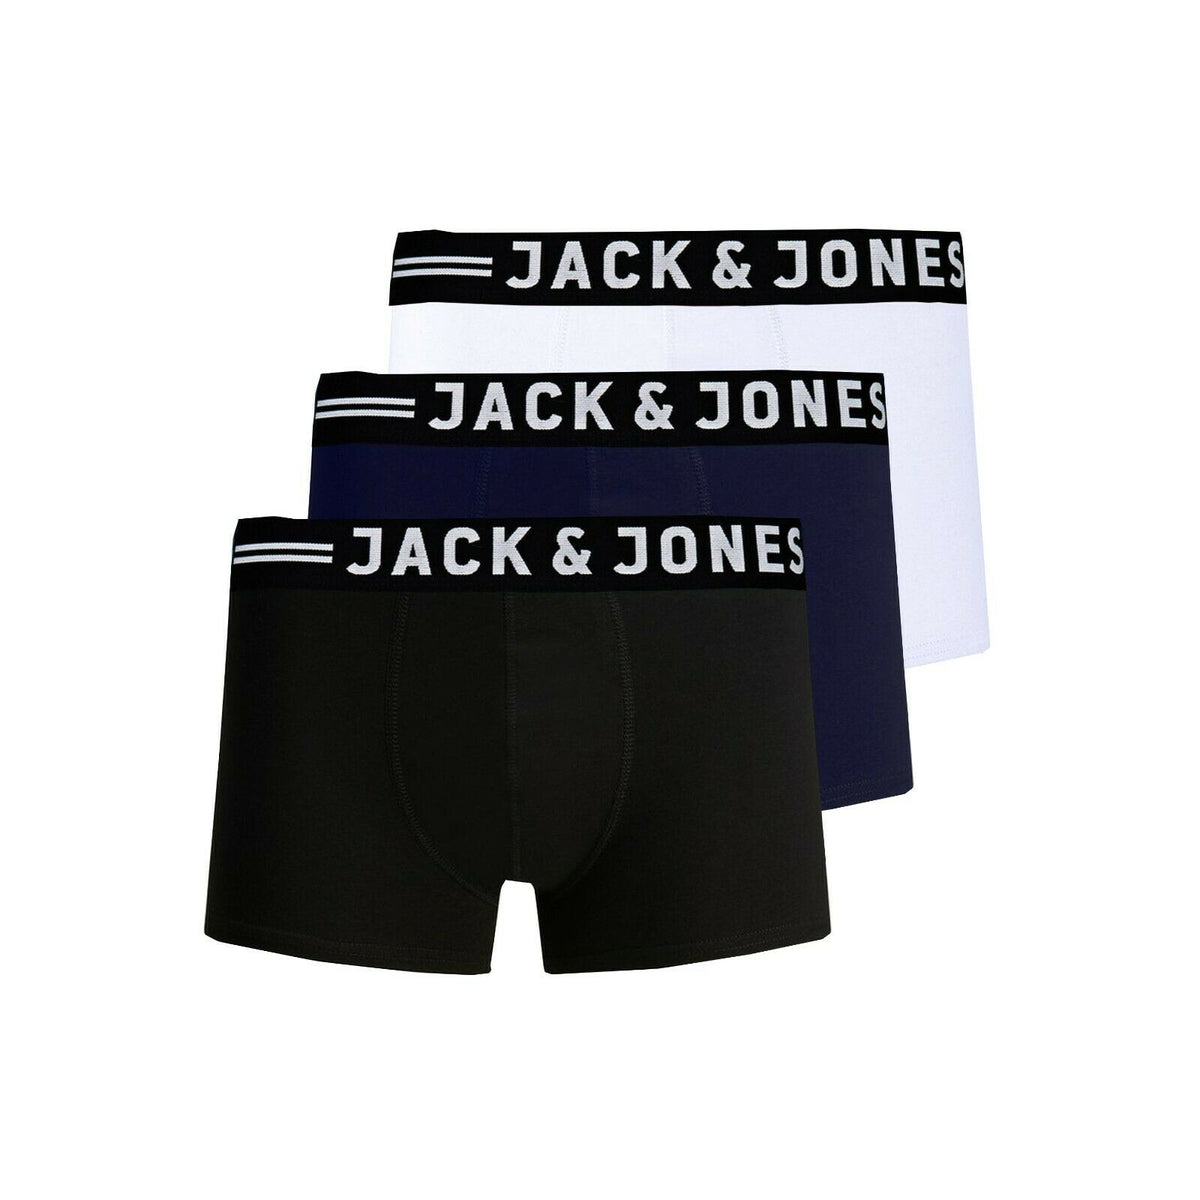 Jack and Jones 3 Pack Trunks Black White Navy Multipack